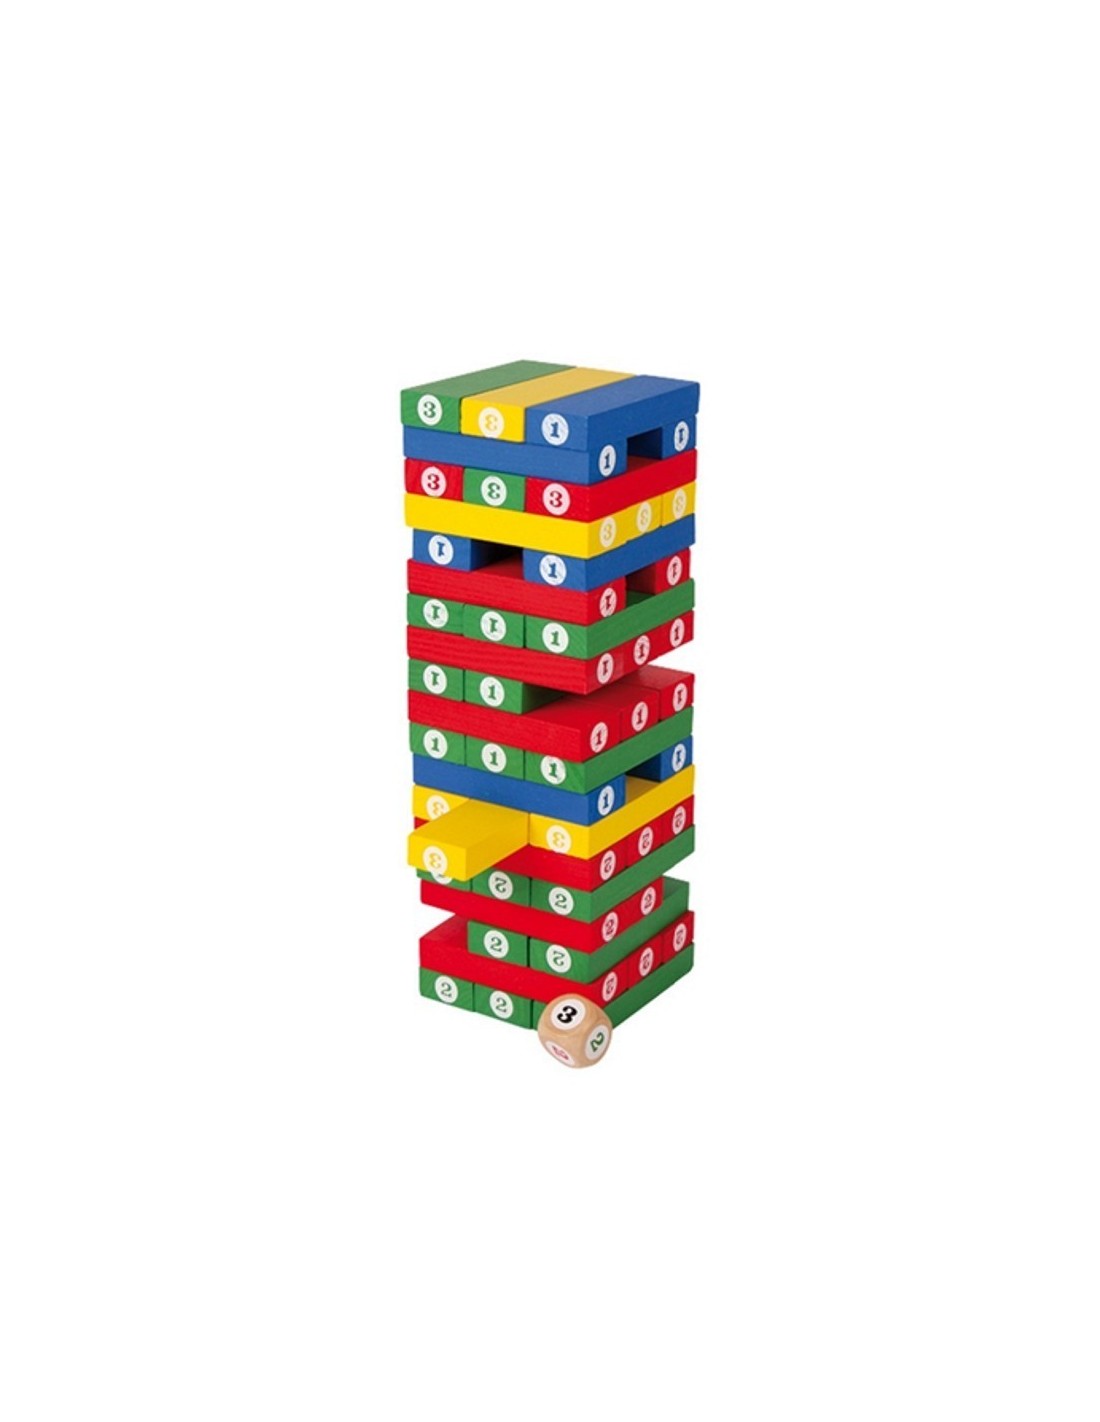 Torre de números de madera. Medidas: 23x7,5x7,5 cm.